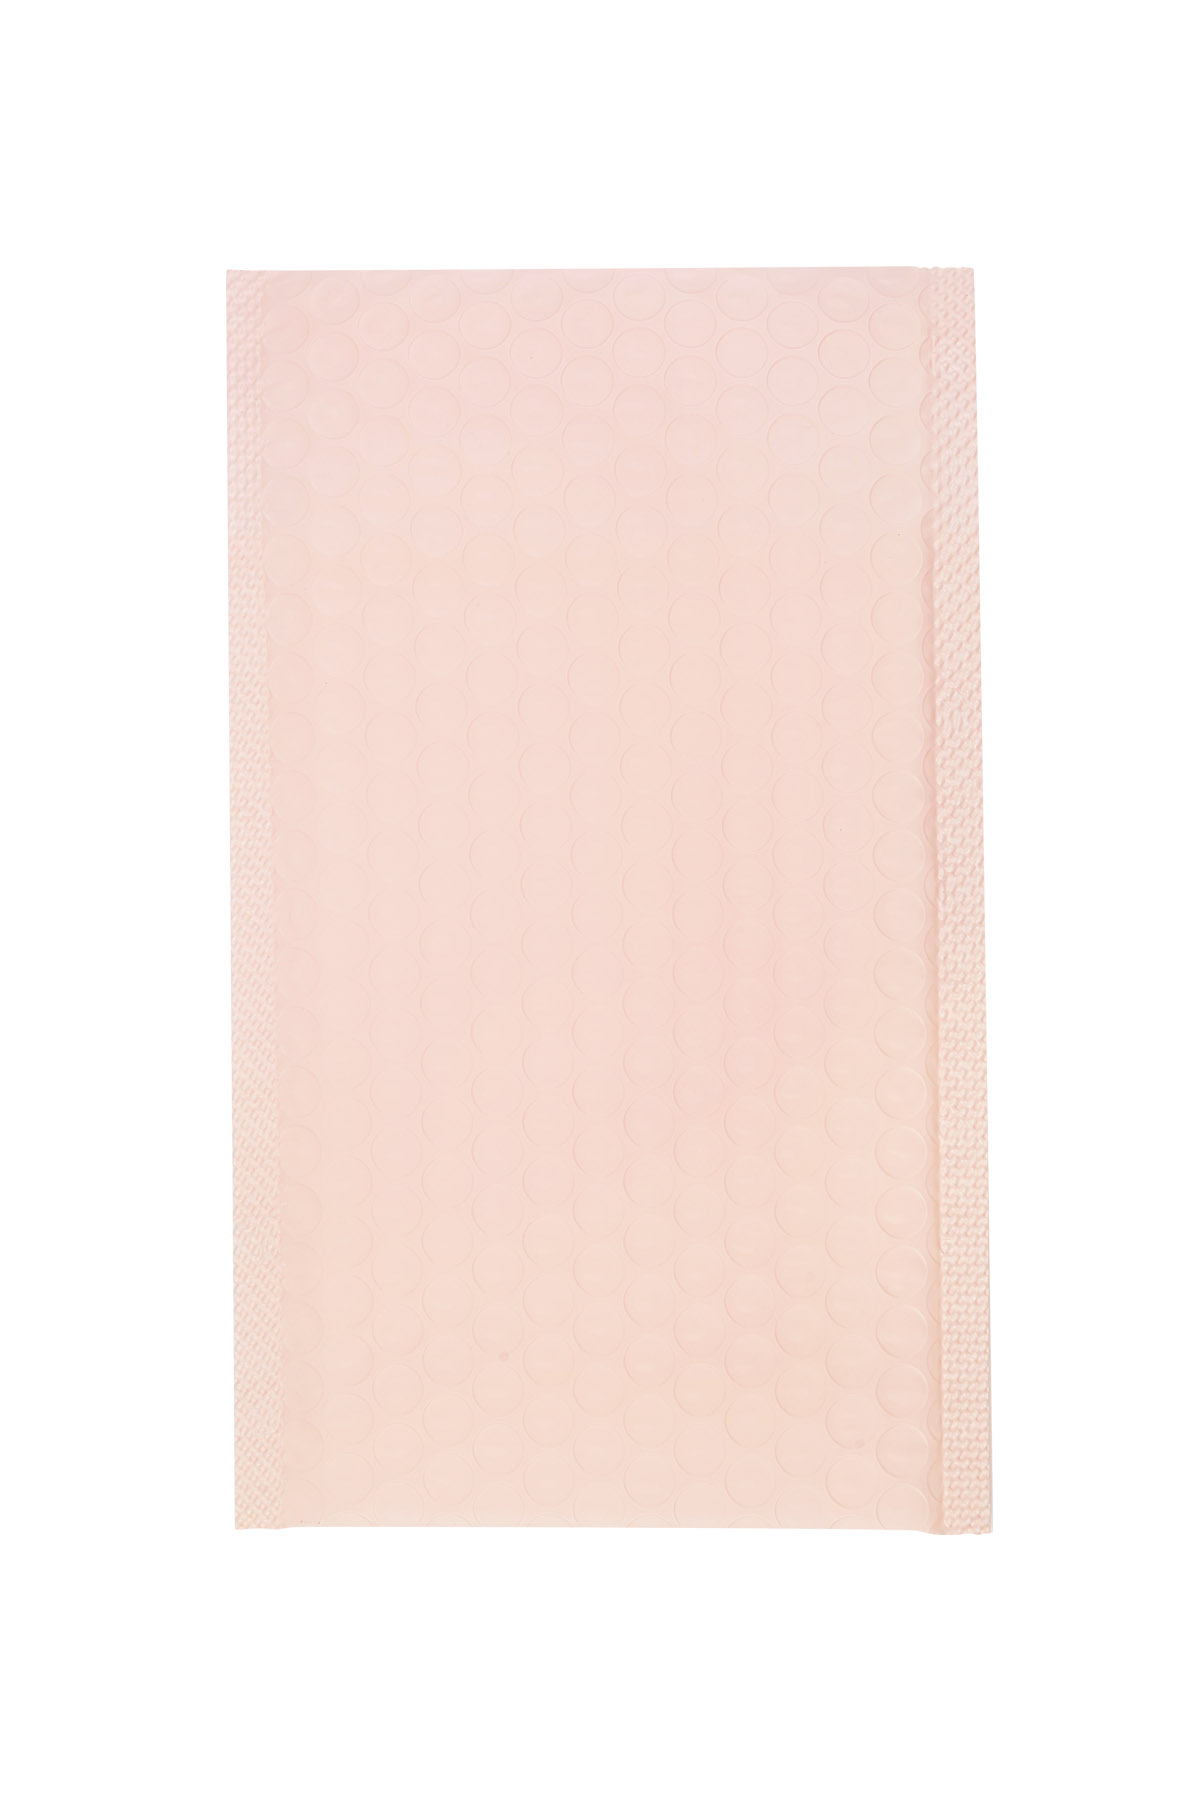 Mailing bag bubble - pastel pink Plastic h5 